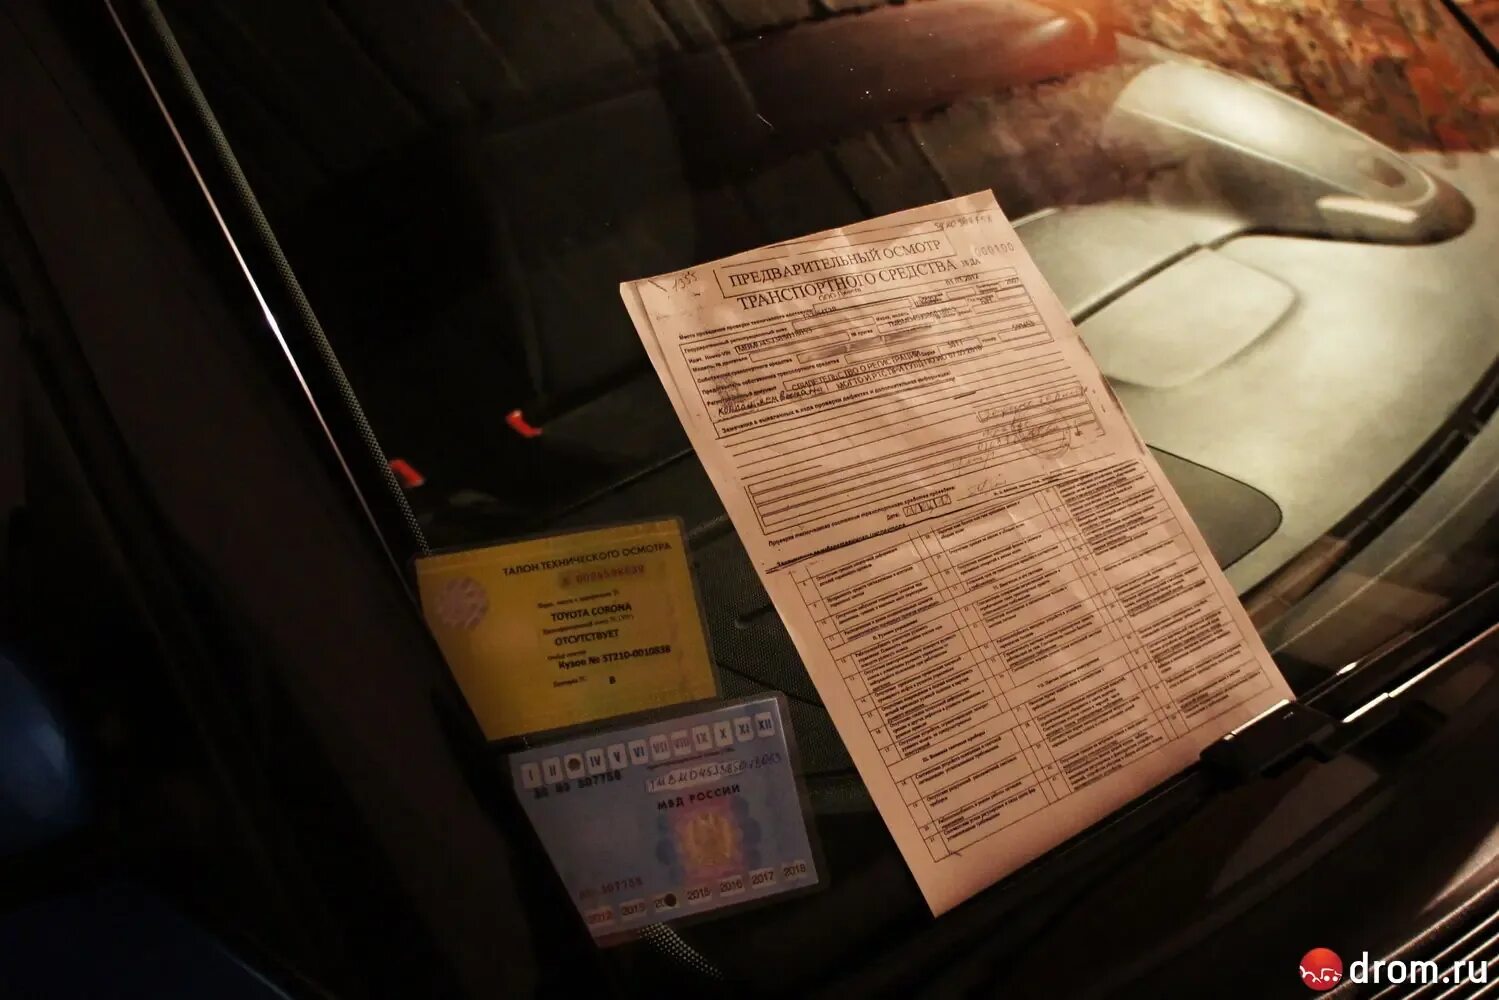 Какие документы нужно возить с собой в машине в 2021 году. Нужно ли возить с собой ПТС. Аренда авто без водителя: требования и документы. Возить с собой птс